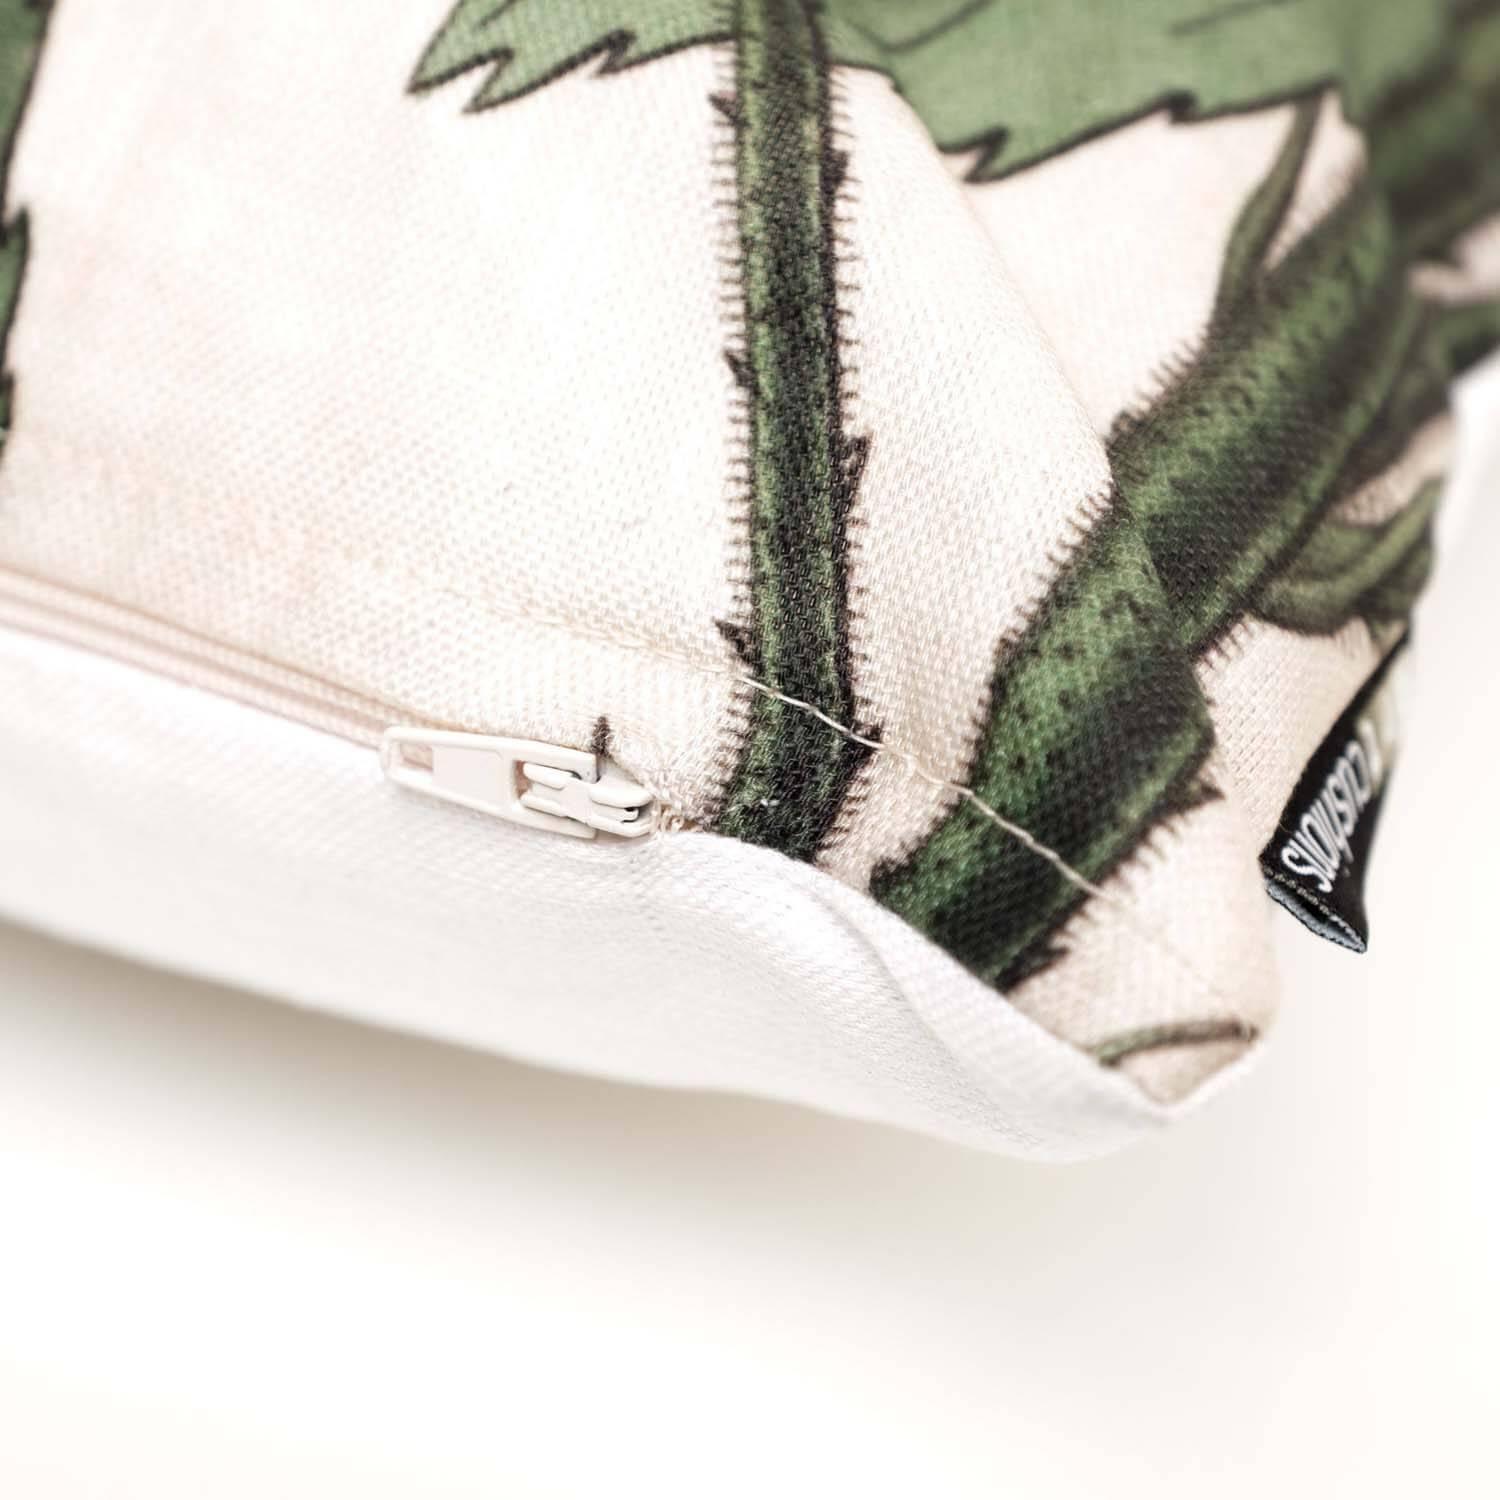 Velvety Erythrina - Botanical Cushion - Handmade Cushions UK - WeLoveCushions